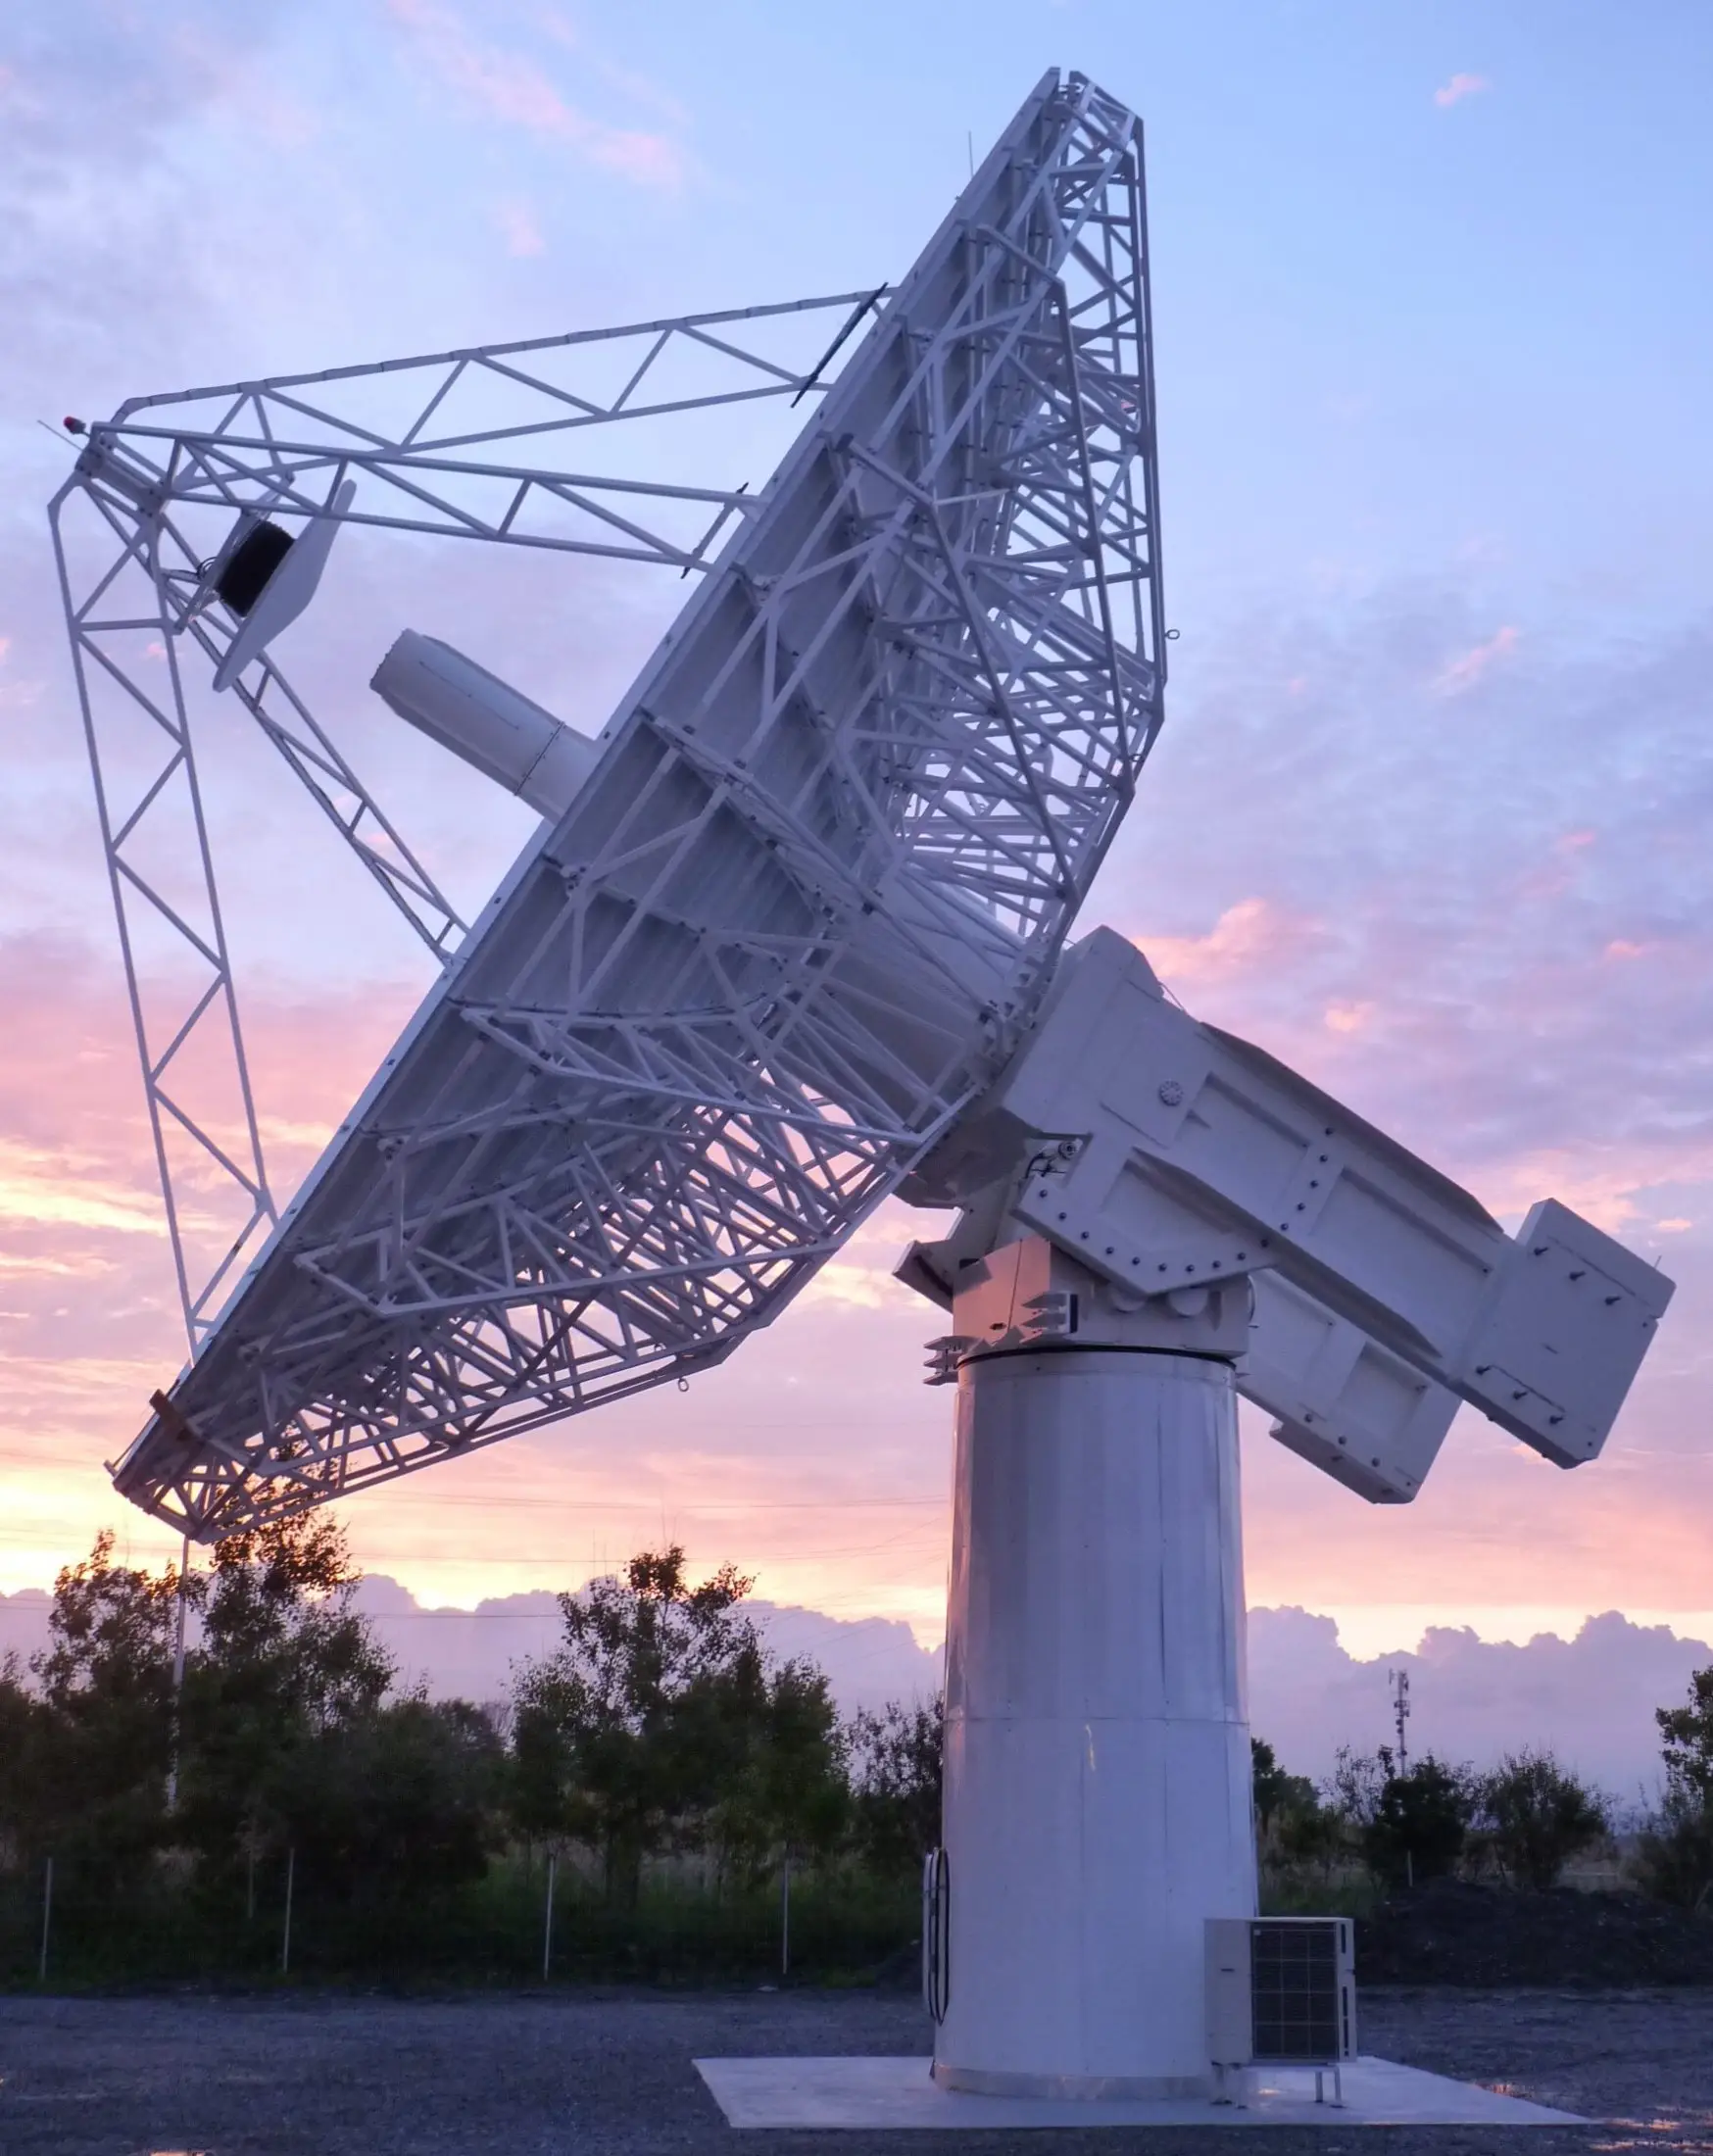 Grand radiotélescope pointé vers le haut lors d'un coucher de soleil avec un ciel rose et orange en arrière-plan.